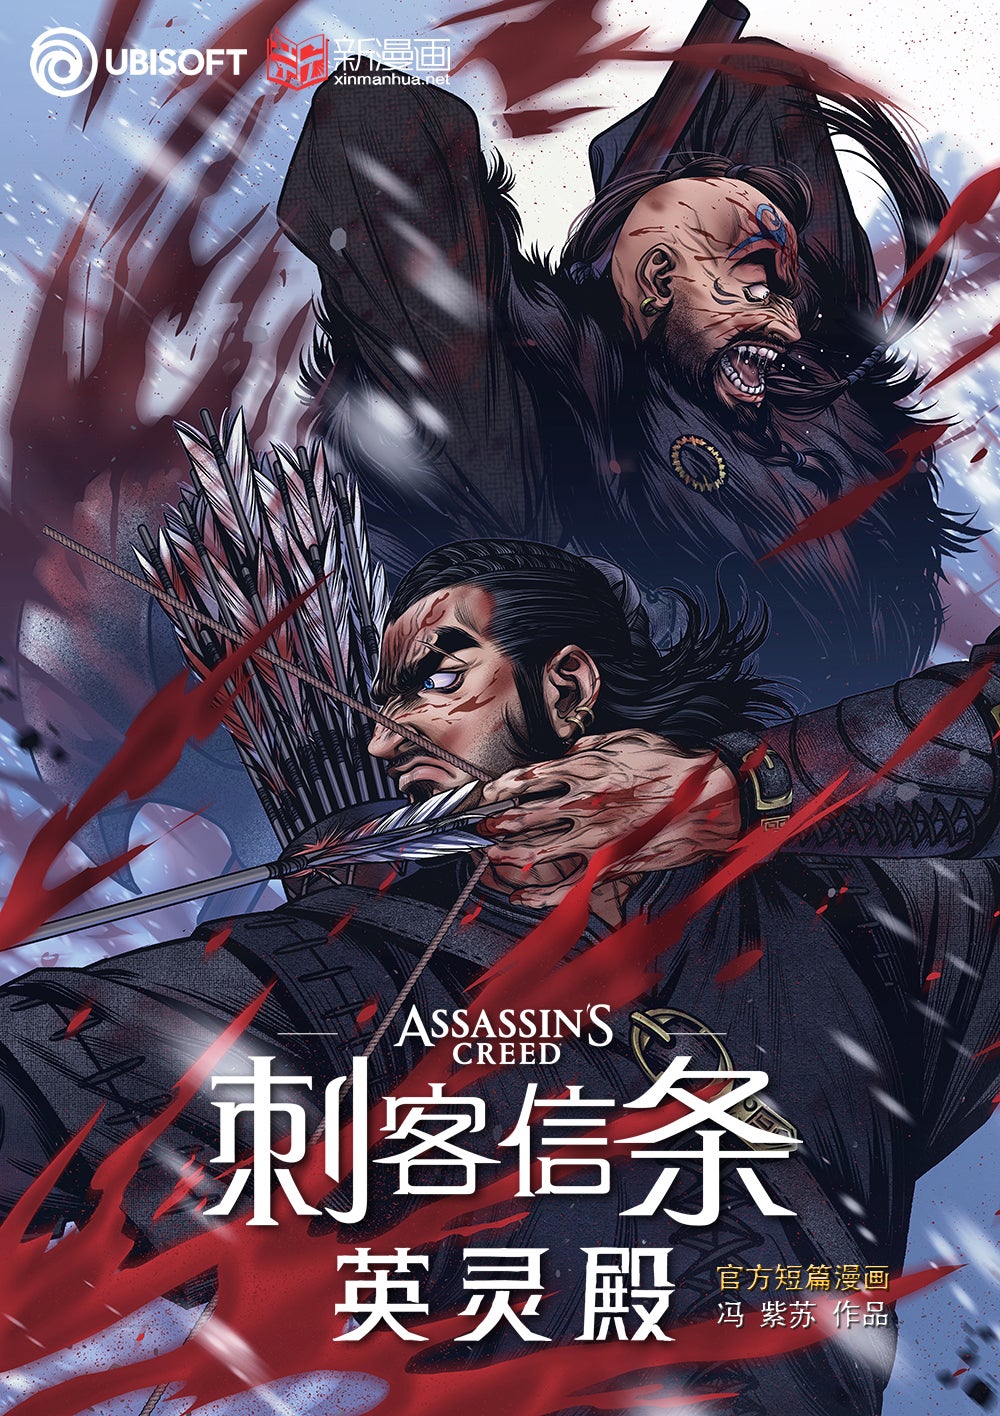 Ubisoft details Assassin's Creed Black Flag webtoon sequel, Shao Jun books,  Netflix projects 